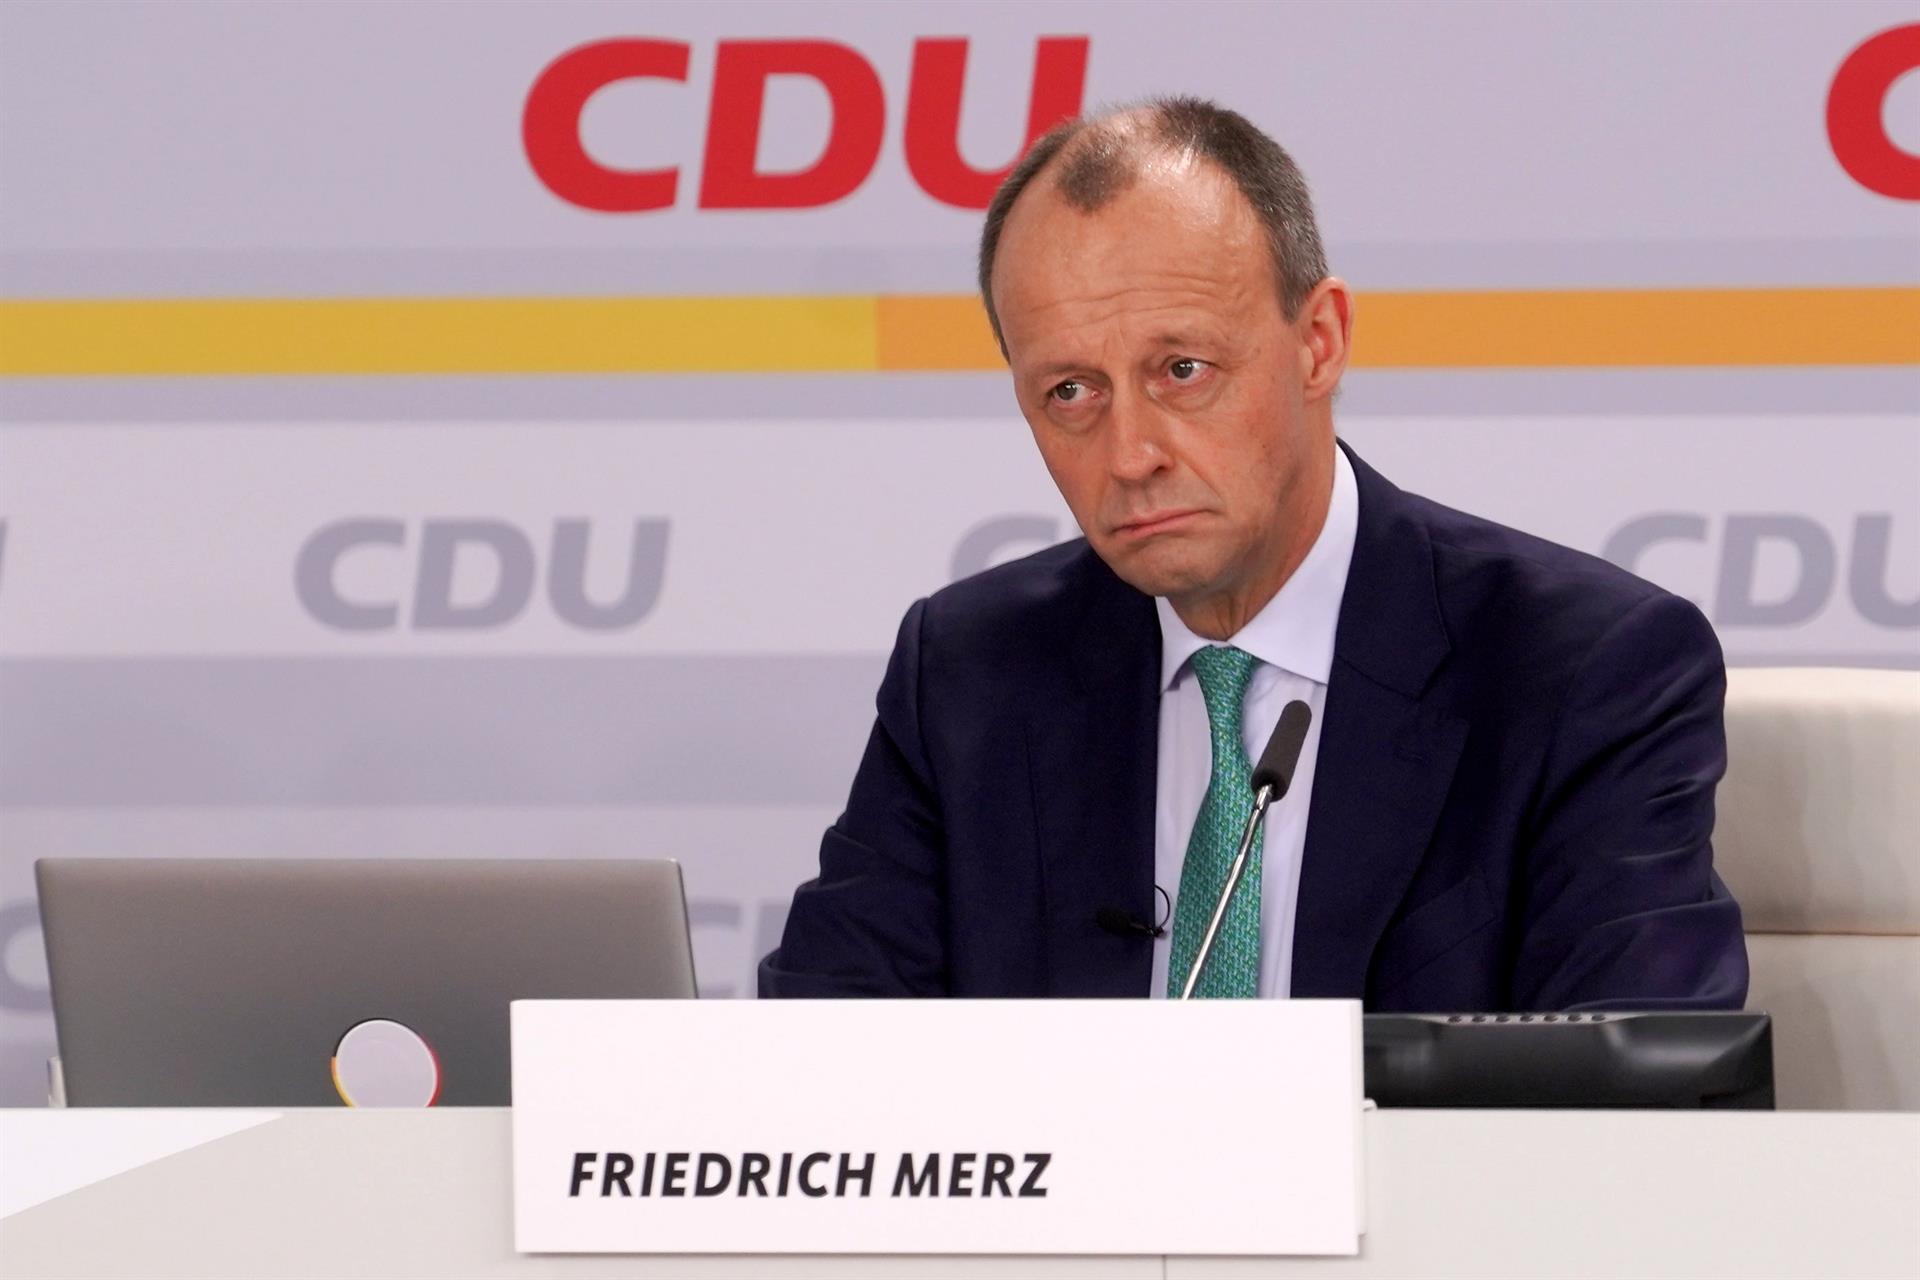 La CDU culmina su giro a la derecha con Merz para distanciarse de Merkel